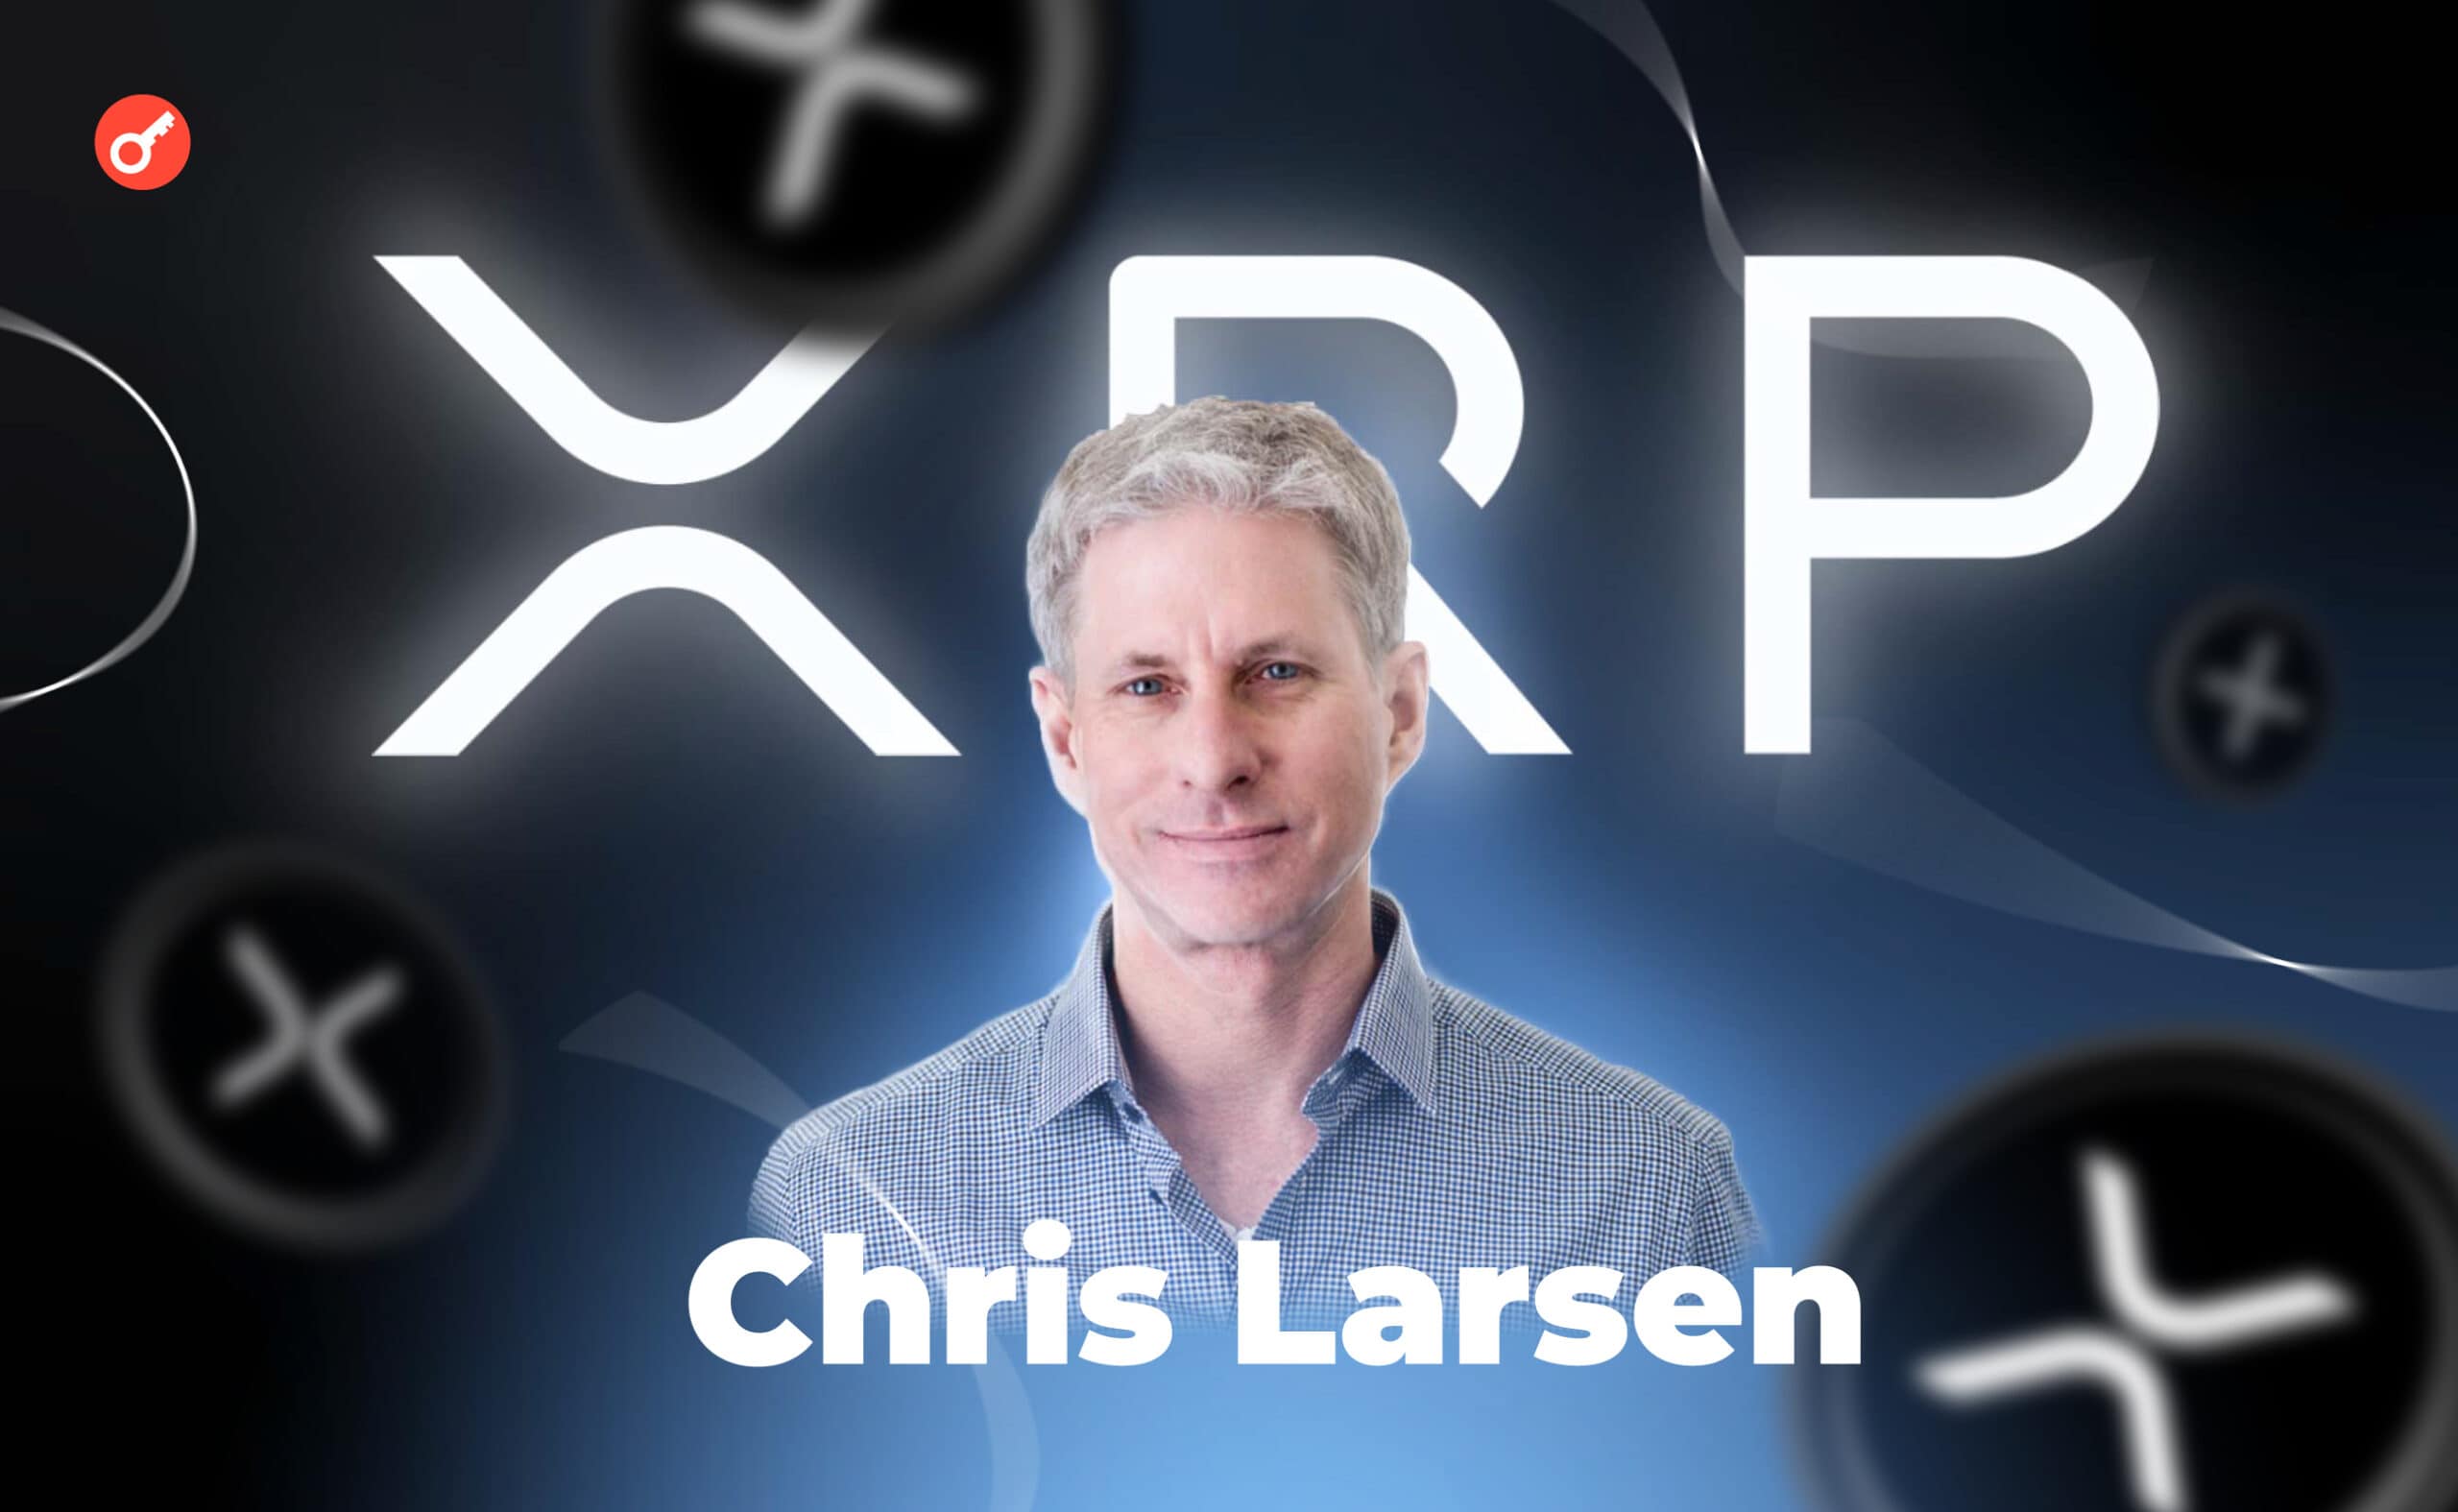 Кріс Ларсен: біографія засновника XRP та оцінка його статків. Головний колаж статті.